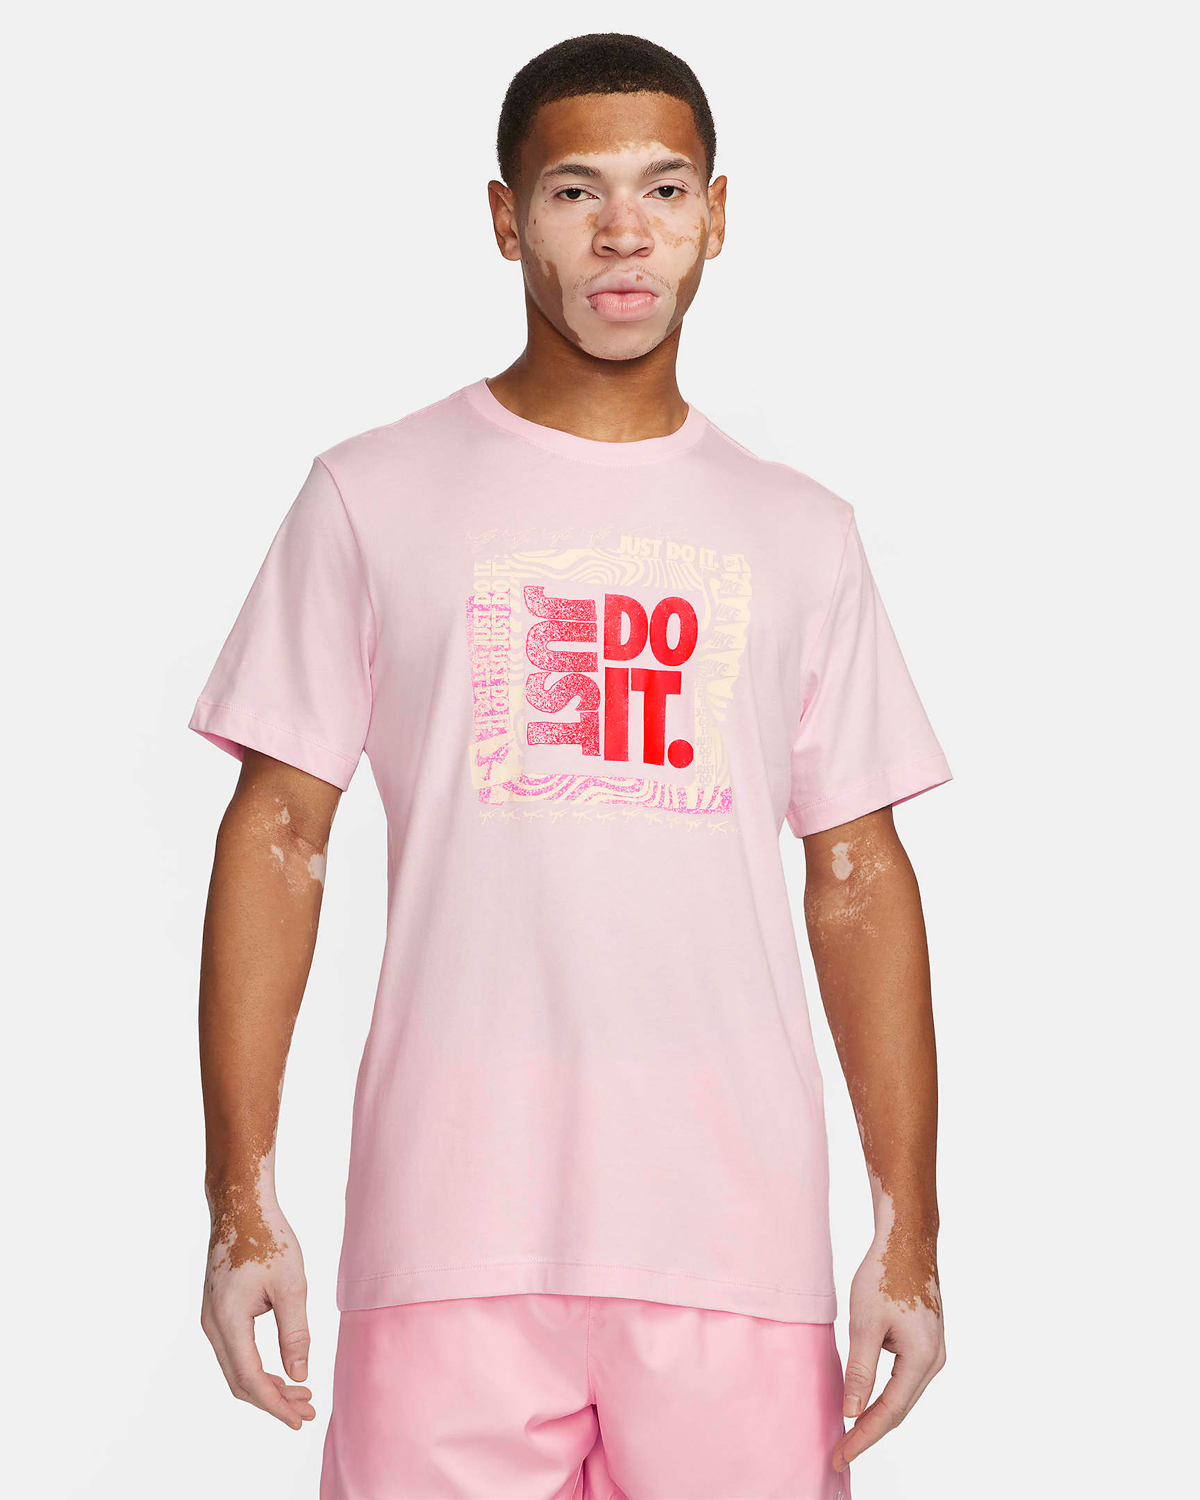 Nike-Sportswear-T-Shirt-Pink-Foam-1